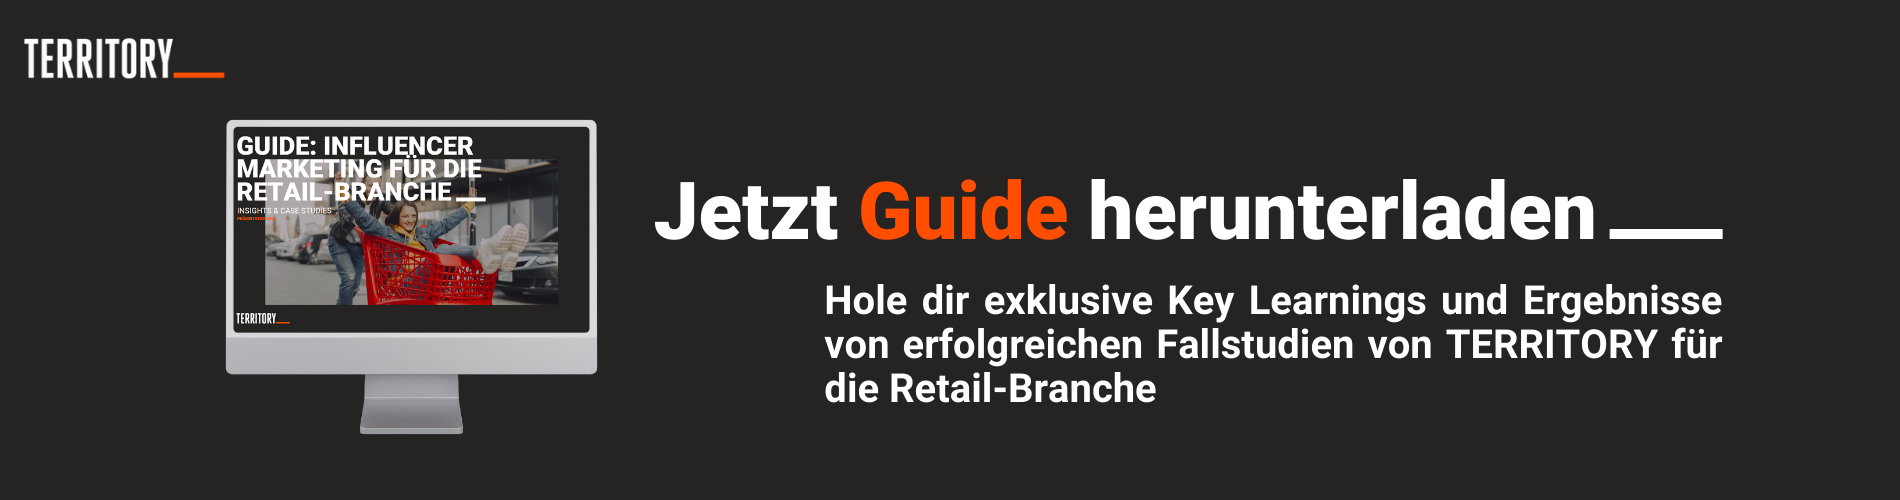 DACH-Jetzt Industry Guide Retail herunterladen (1)-1